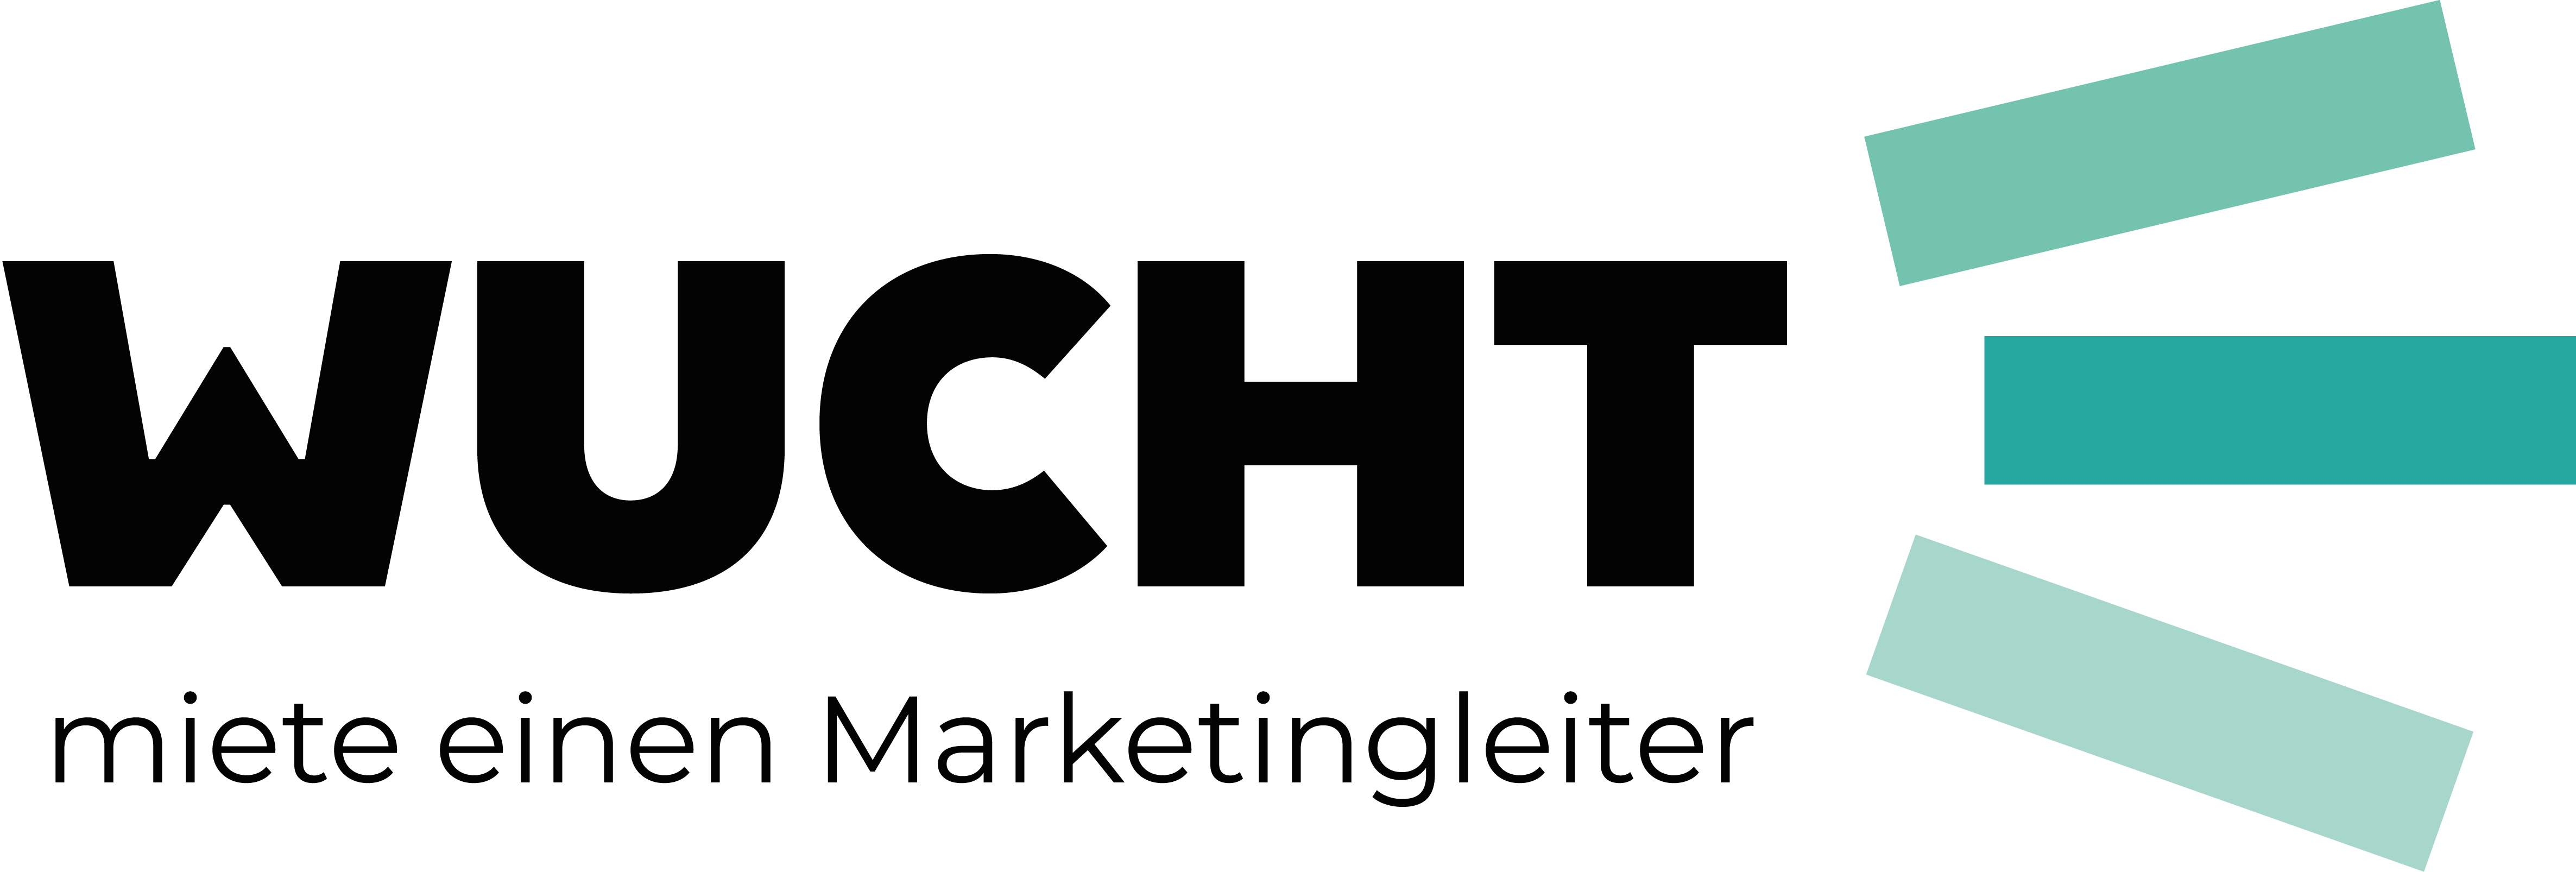 Wucht GmbH